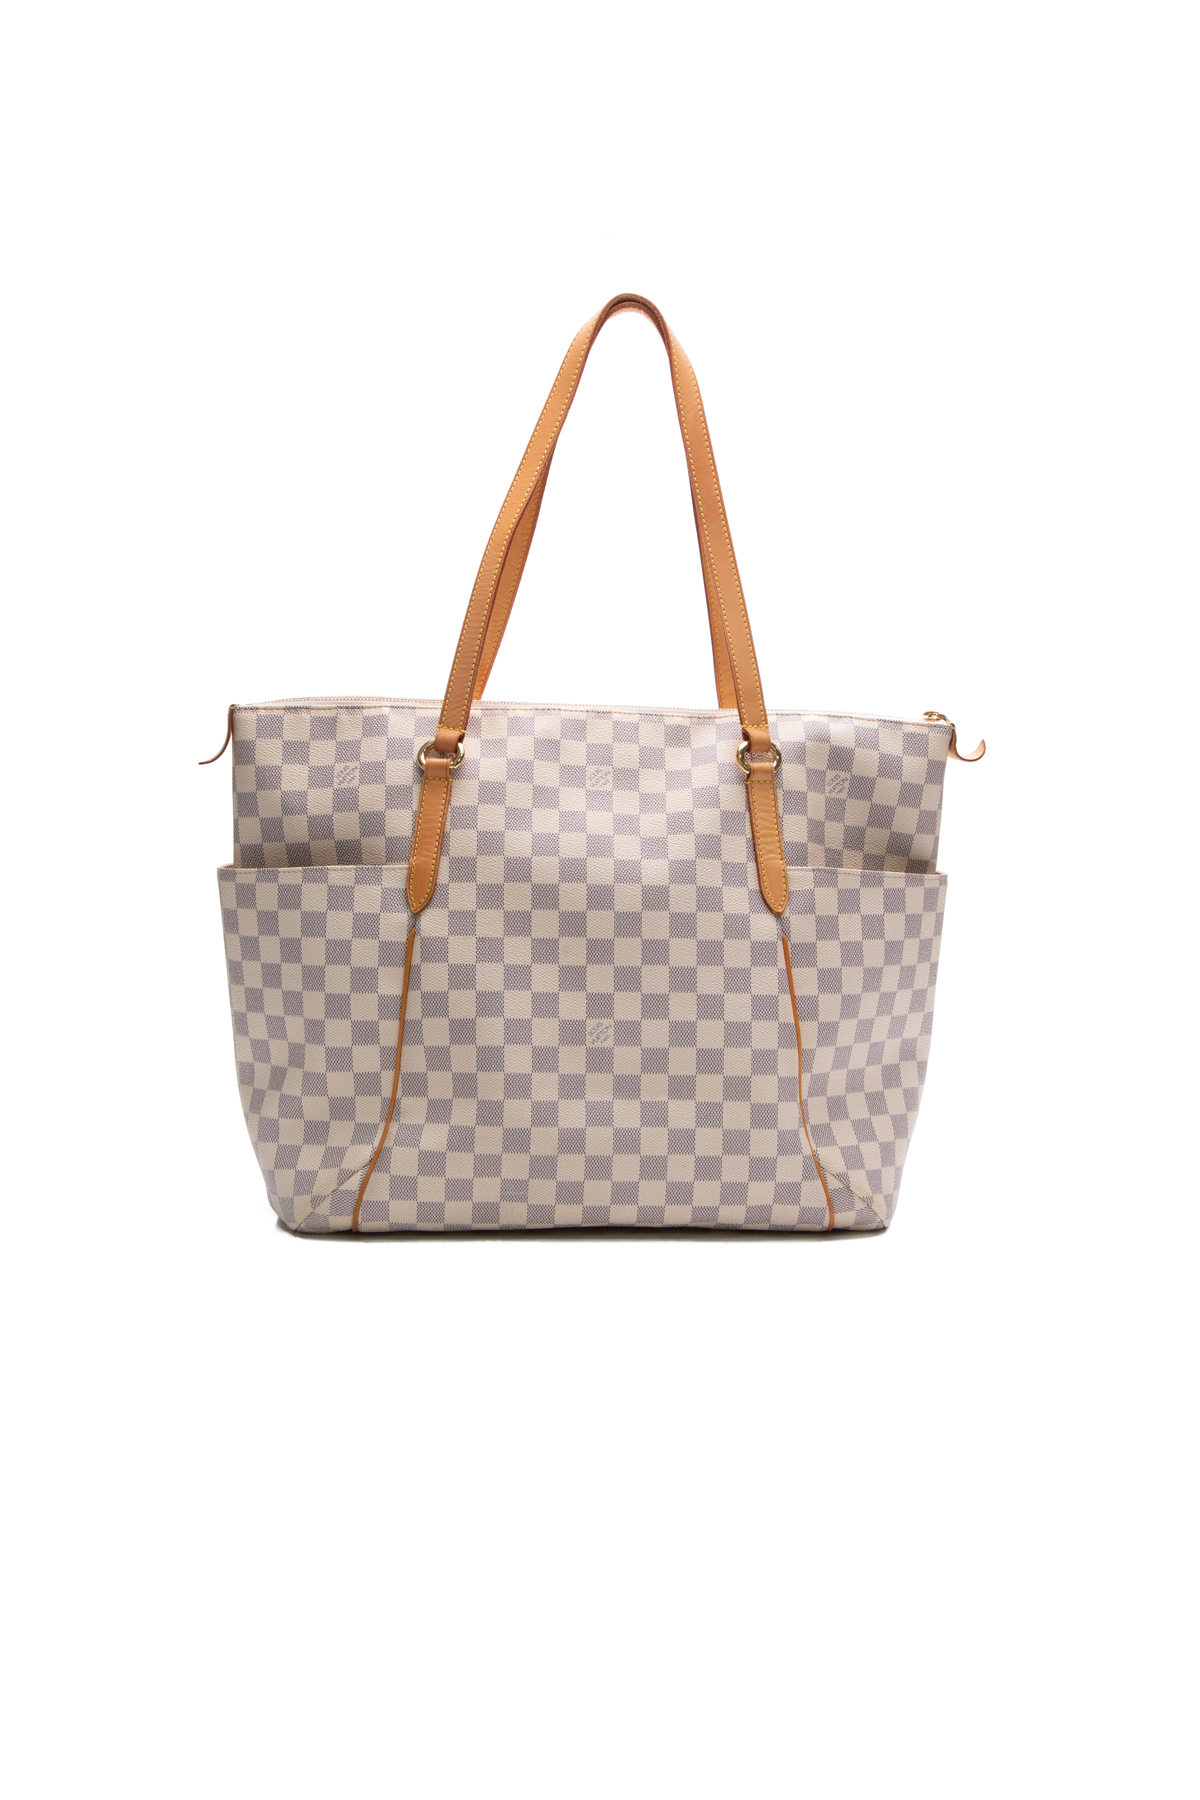 Louis Vuitton Totally Handbag